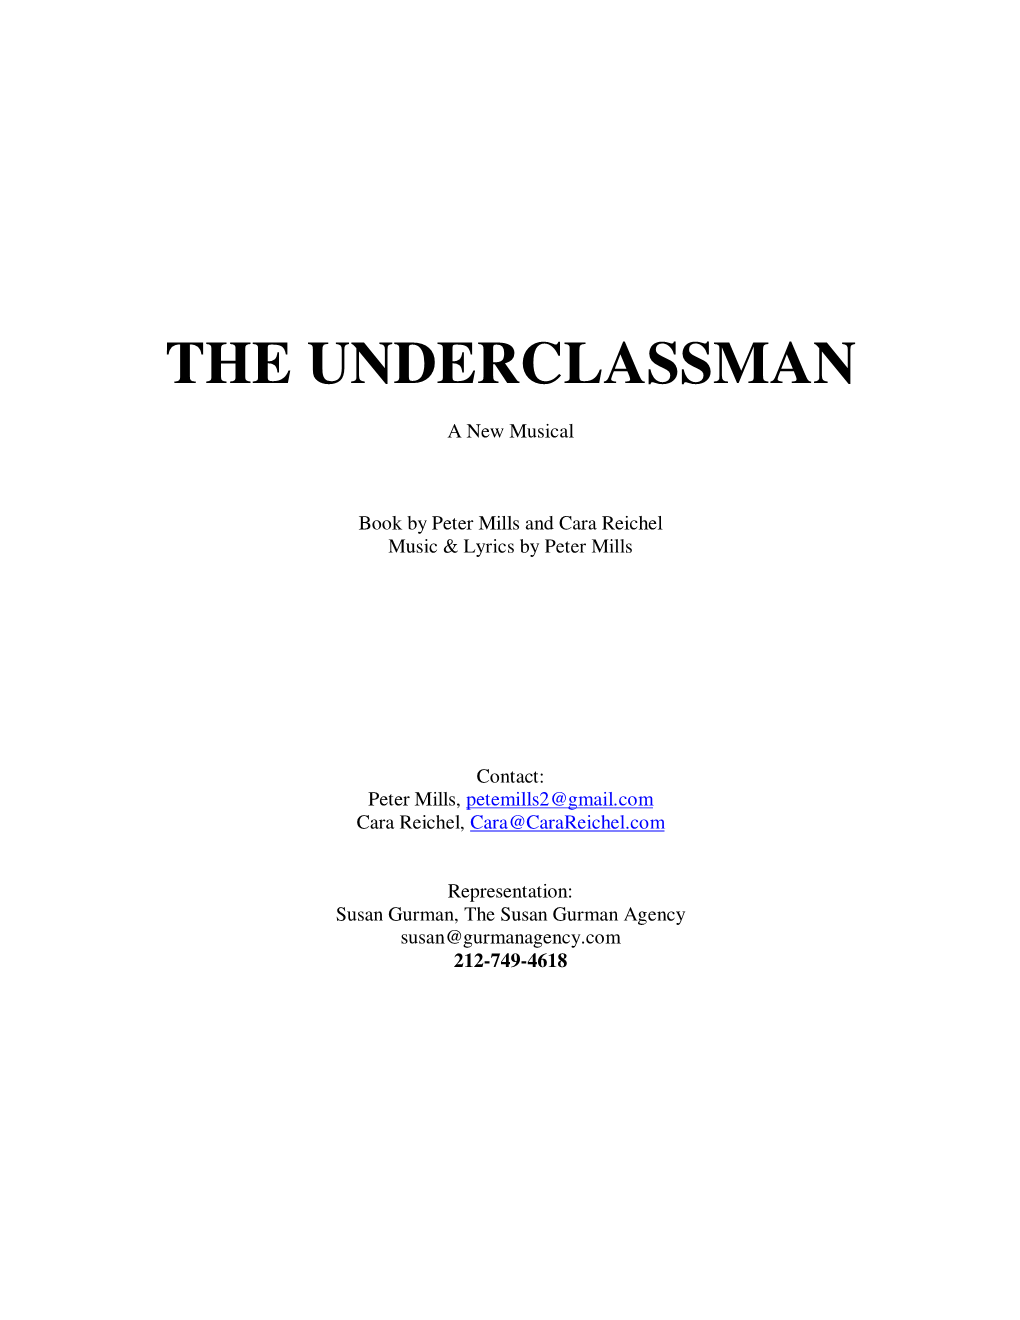 The Underclassman